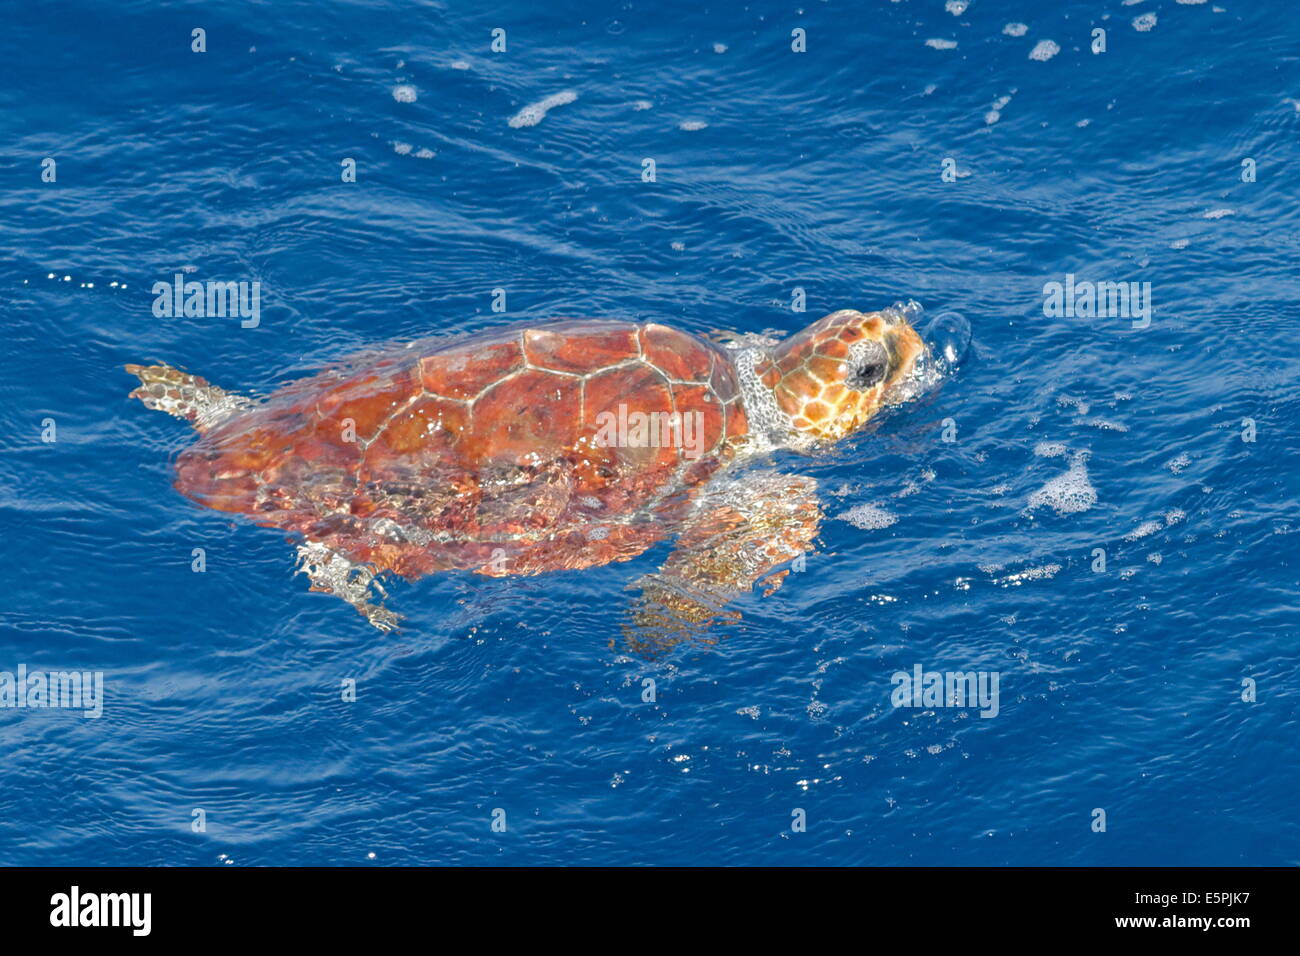 Juvenile Unechte Karettschildkröte (Caretta Caretta), ozeanische Bühne, atmen an die Oberfläche, Nordost-Atlantik, Offshore-Marokko Stockfoto